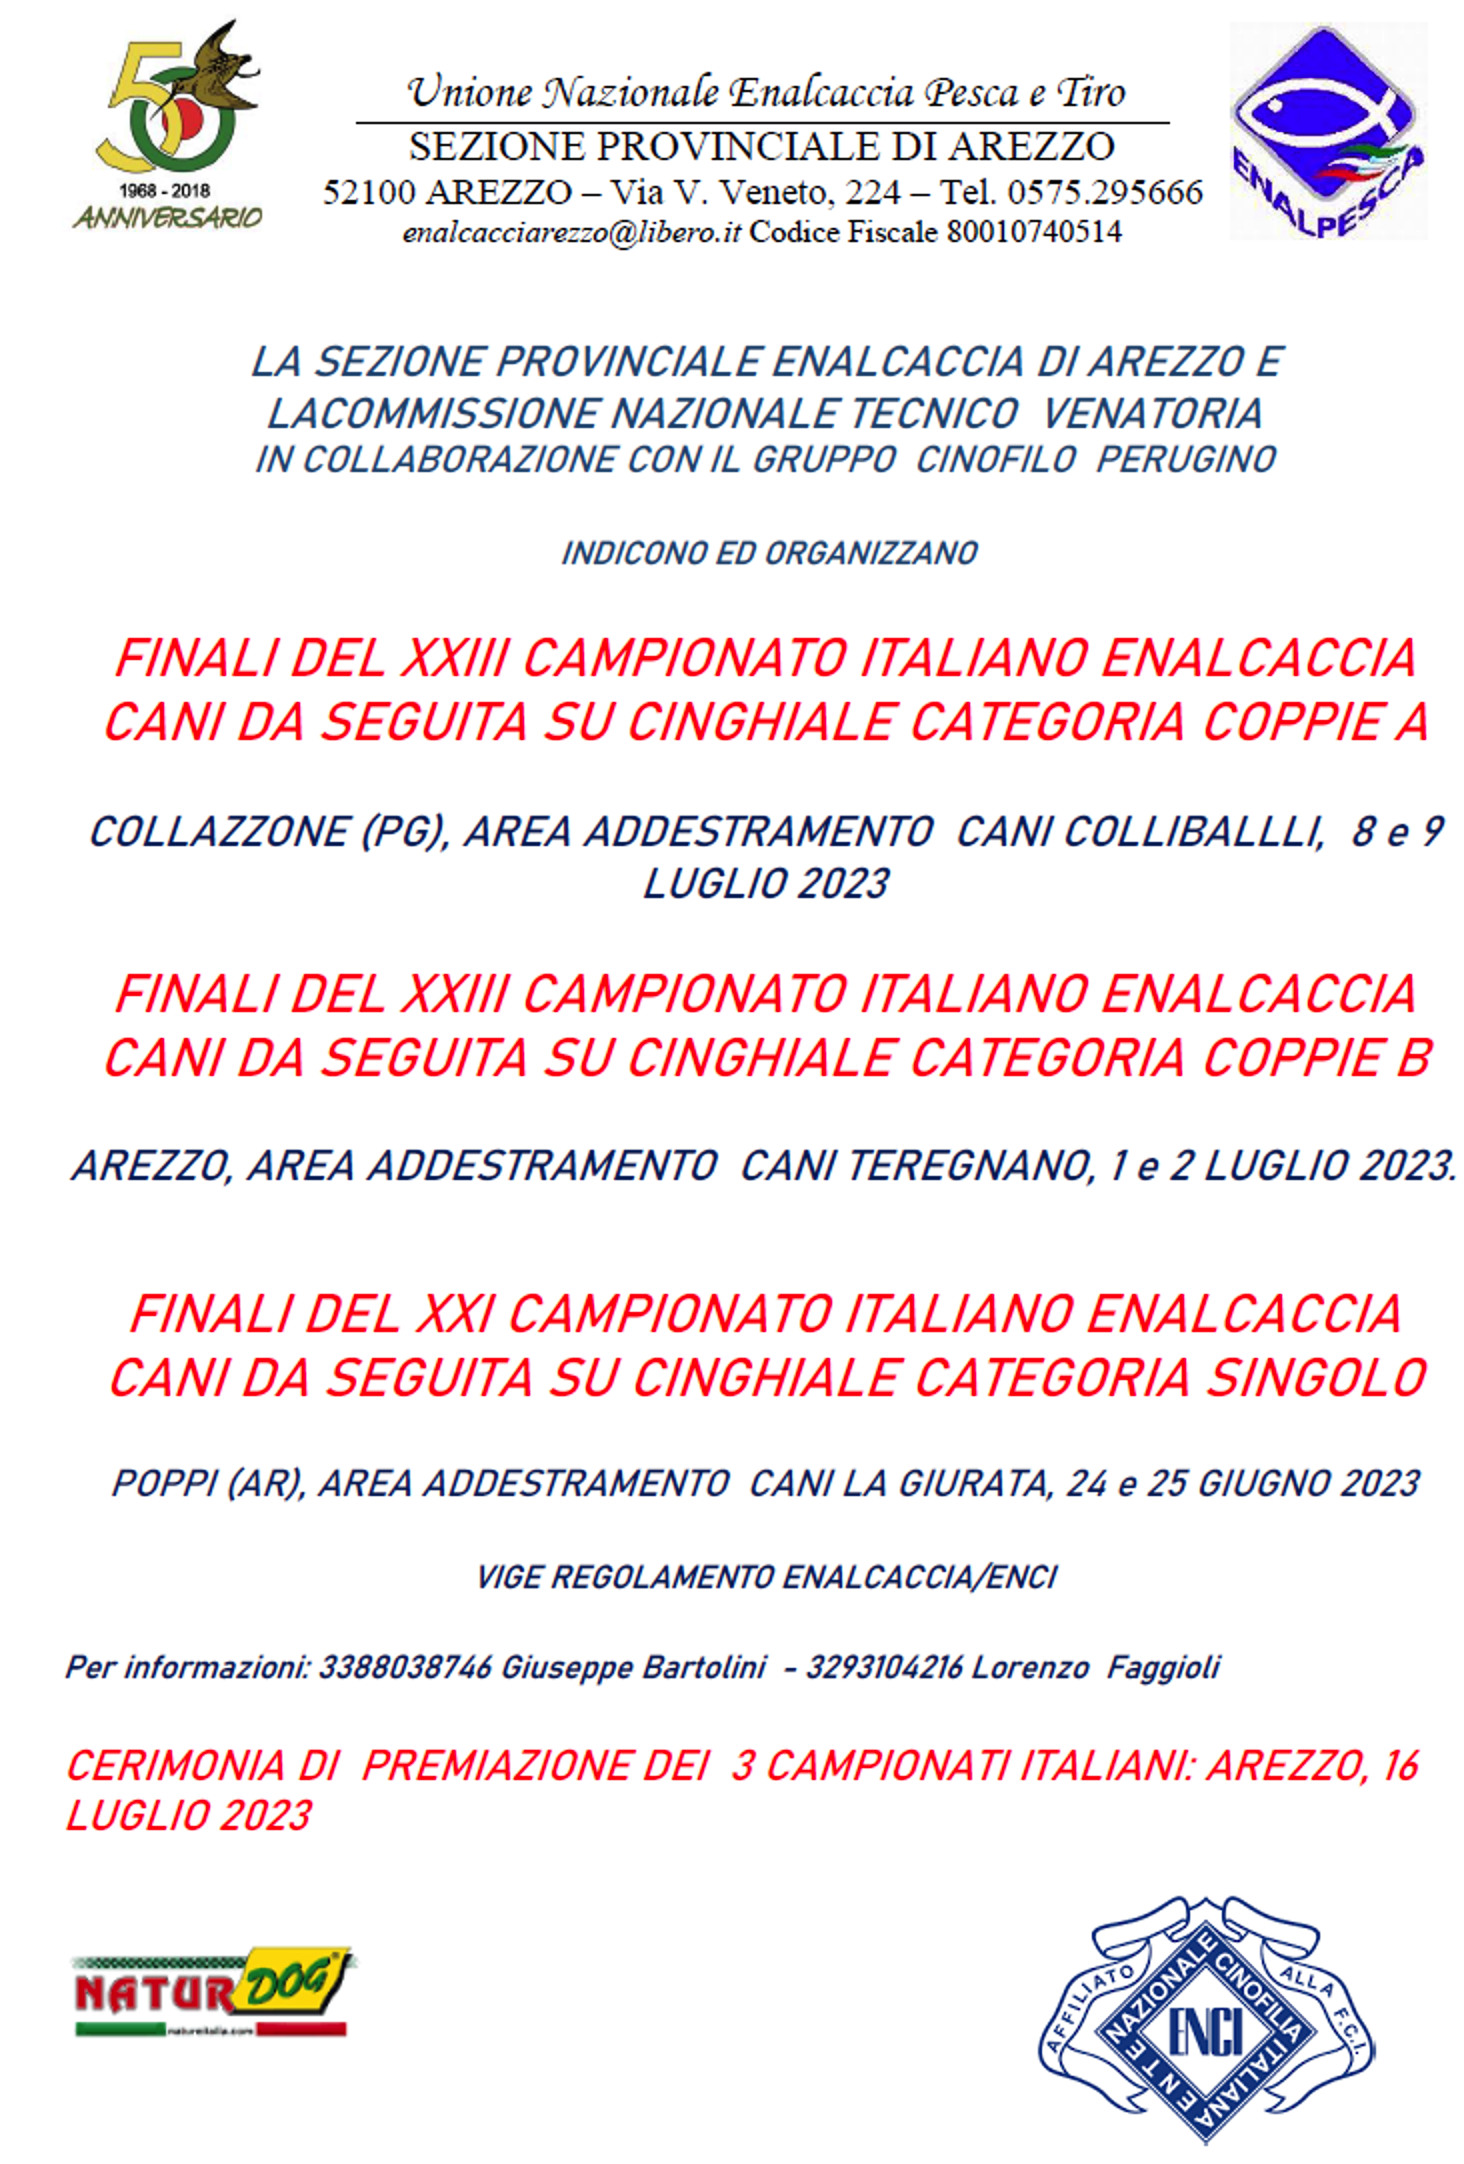 Finali Campionato Nazionale Enalcaccia per Cani da Seguita su Cinghiale - (8-9/07/2023)